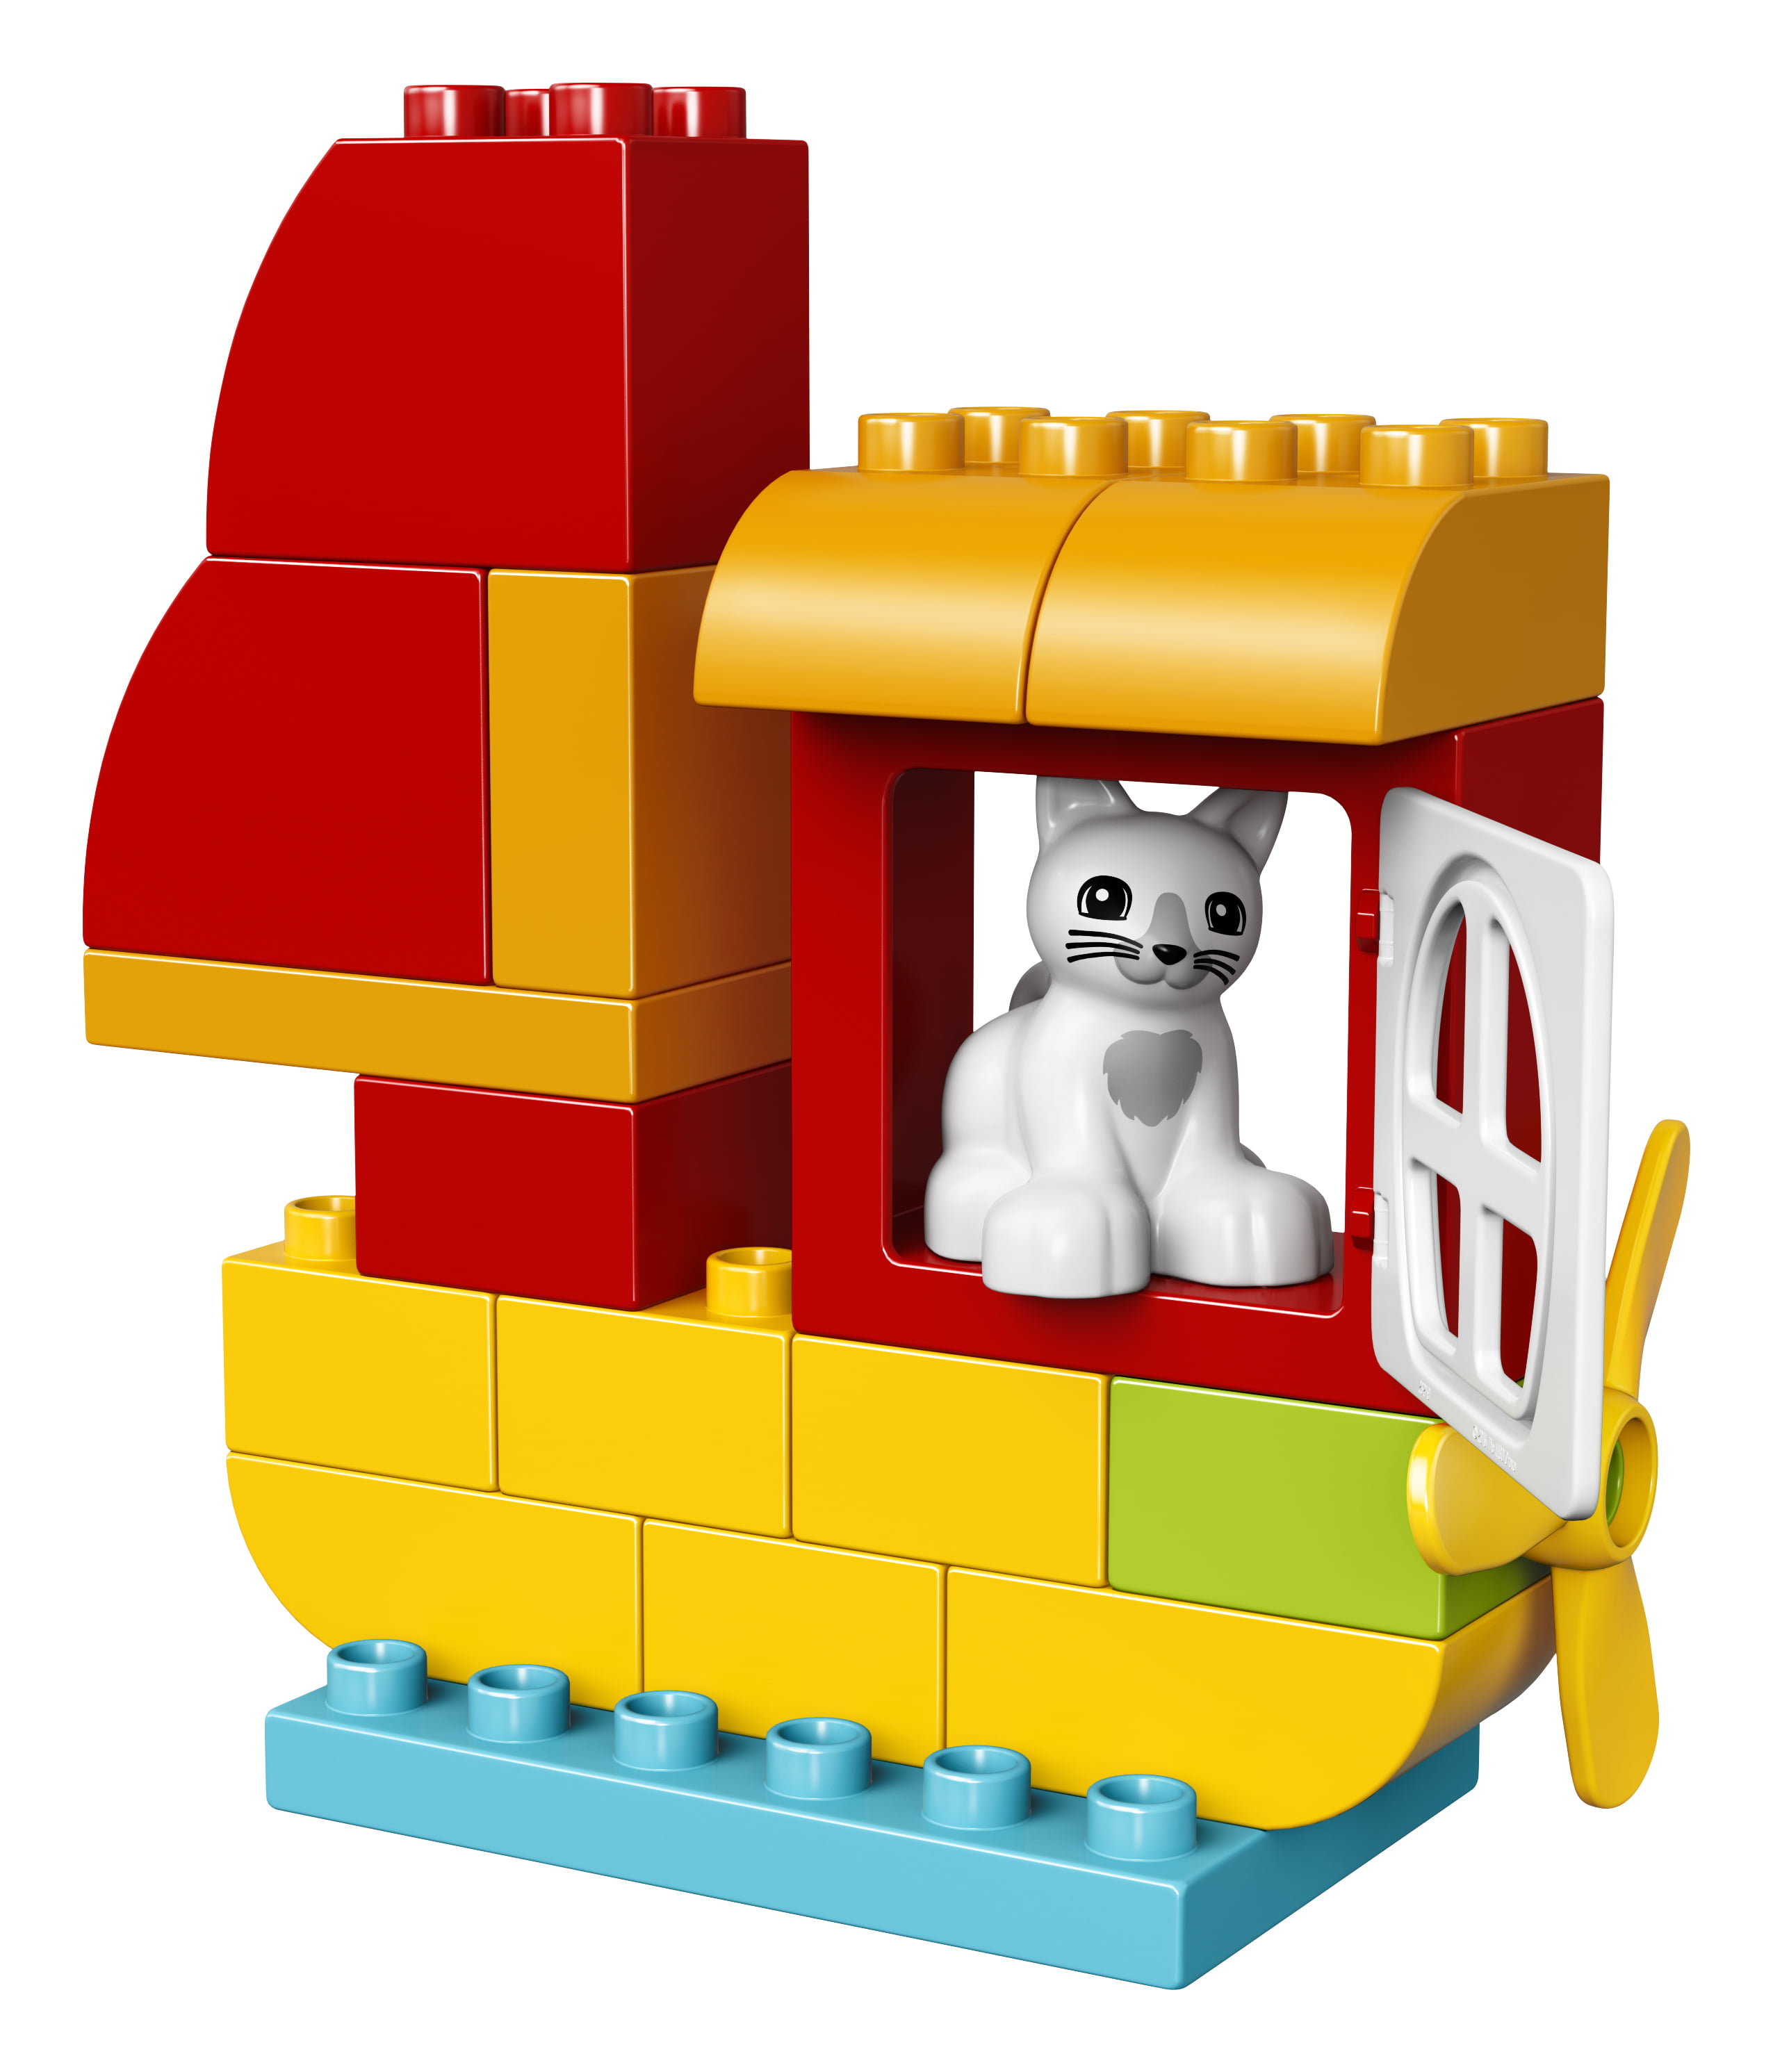 creative lego duplo brick set